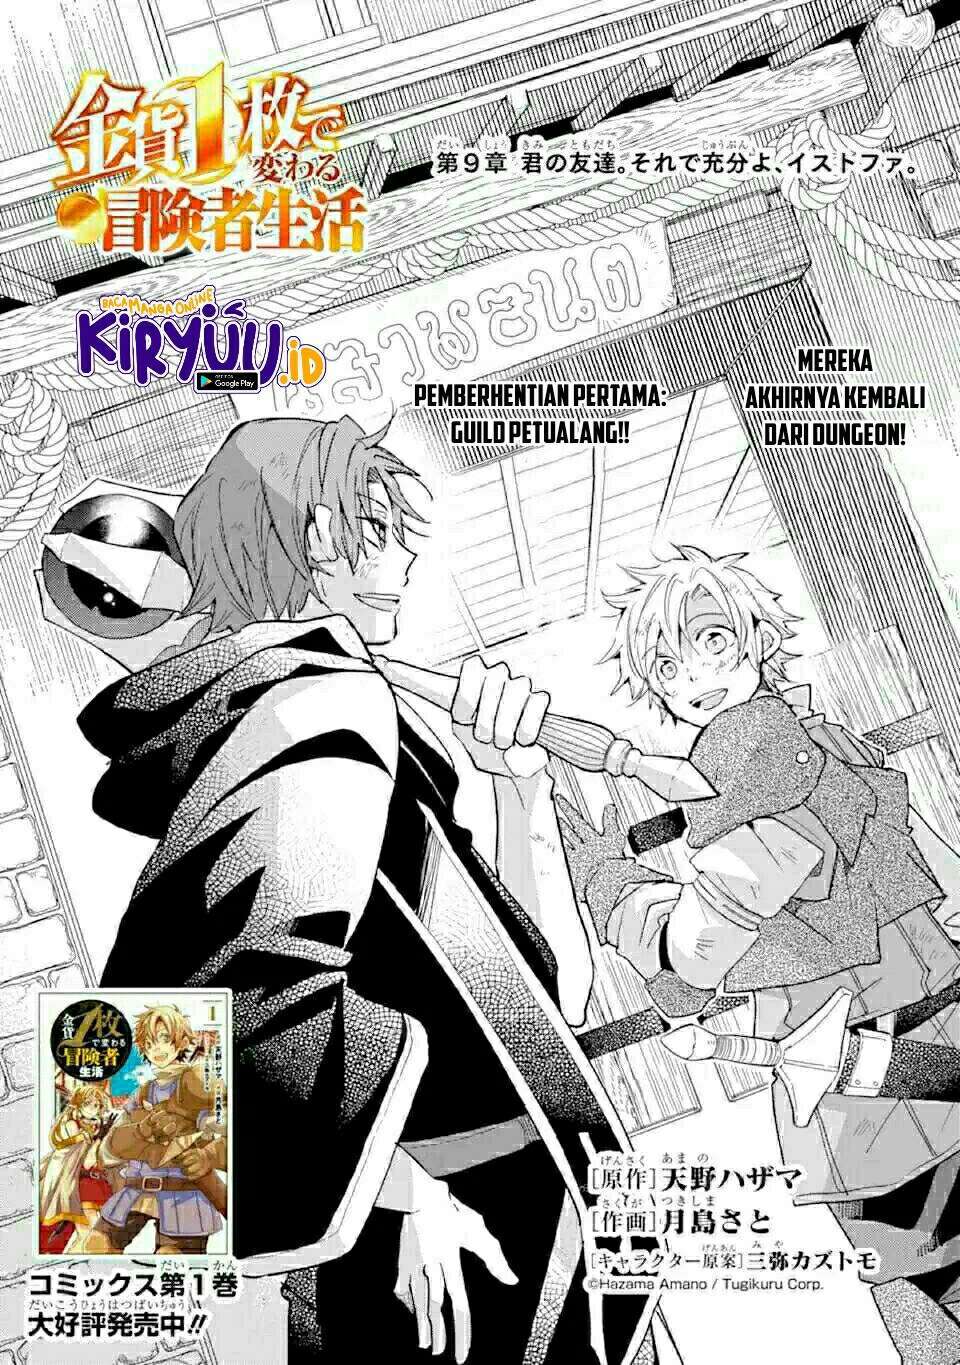 Kinka 1-mai de Kawaru Boukensha Seikatsu Chapter 09